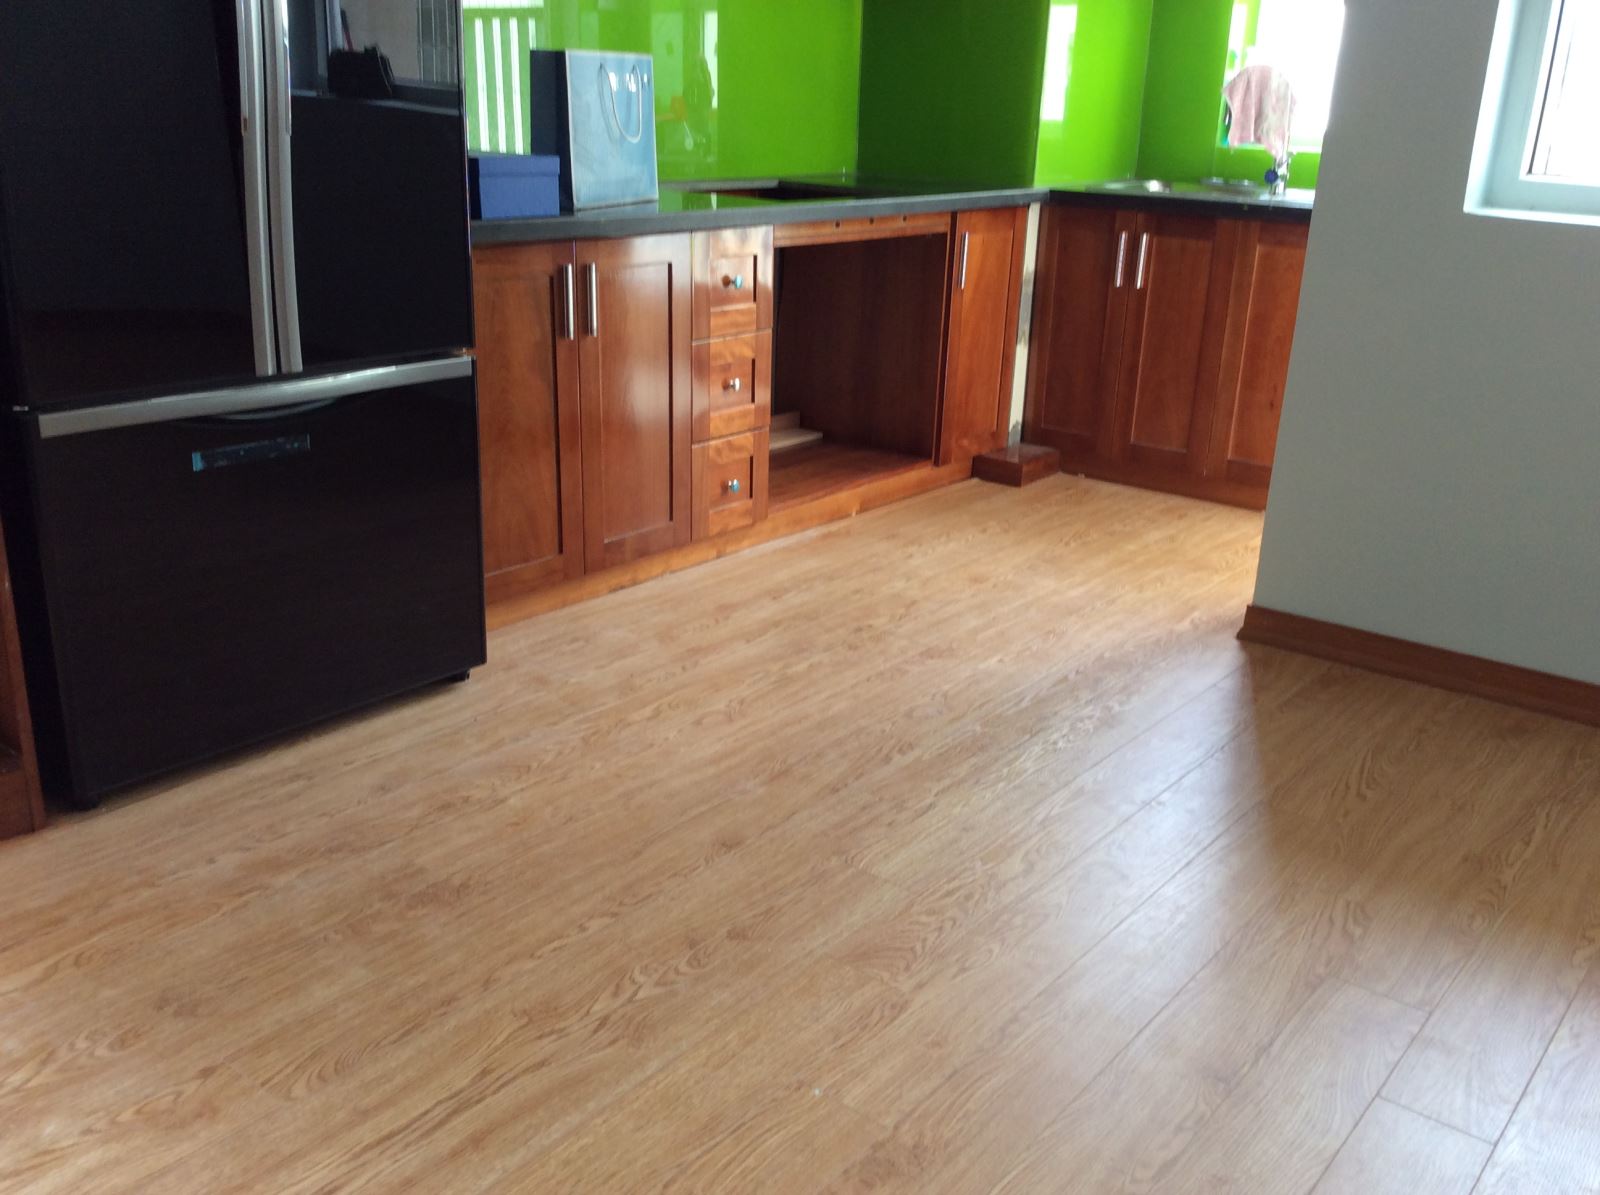 Khu vực bếp nhà chung cư hoàn toàn có thể sử dụng sàn gỗ công nghiệp